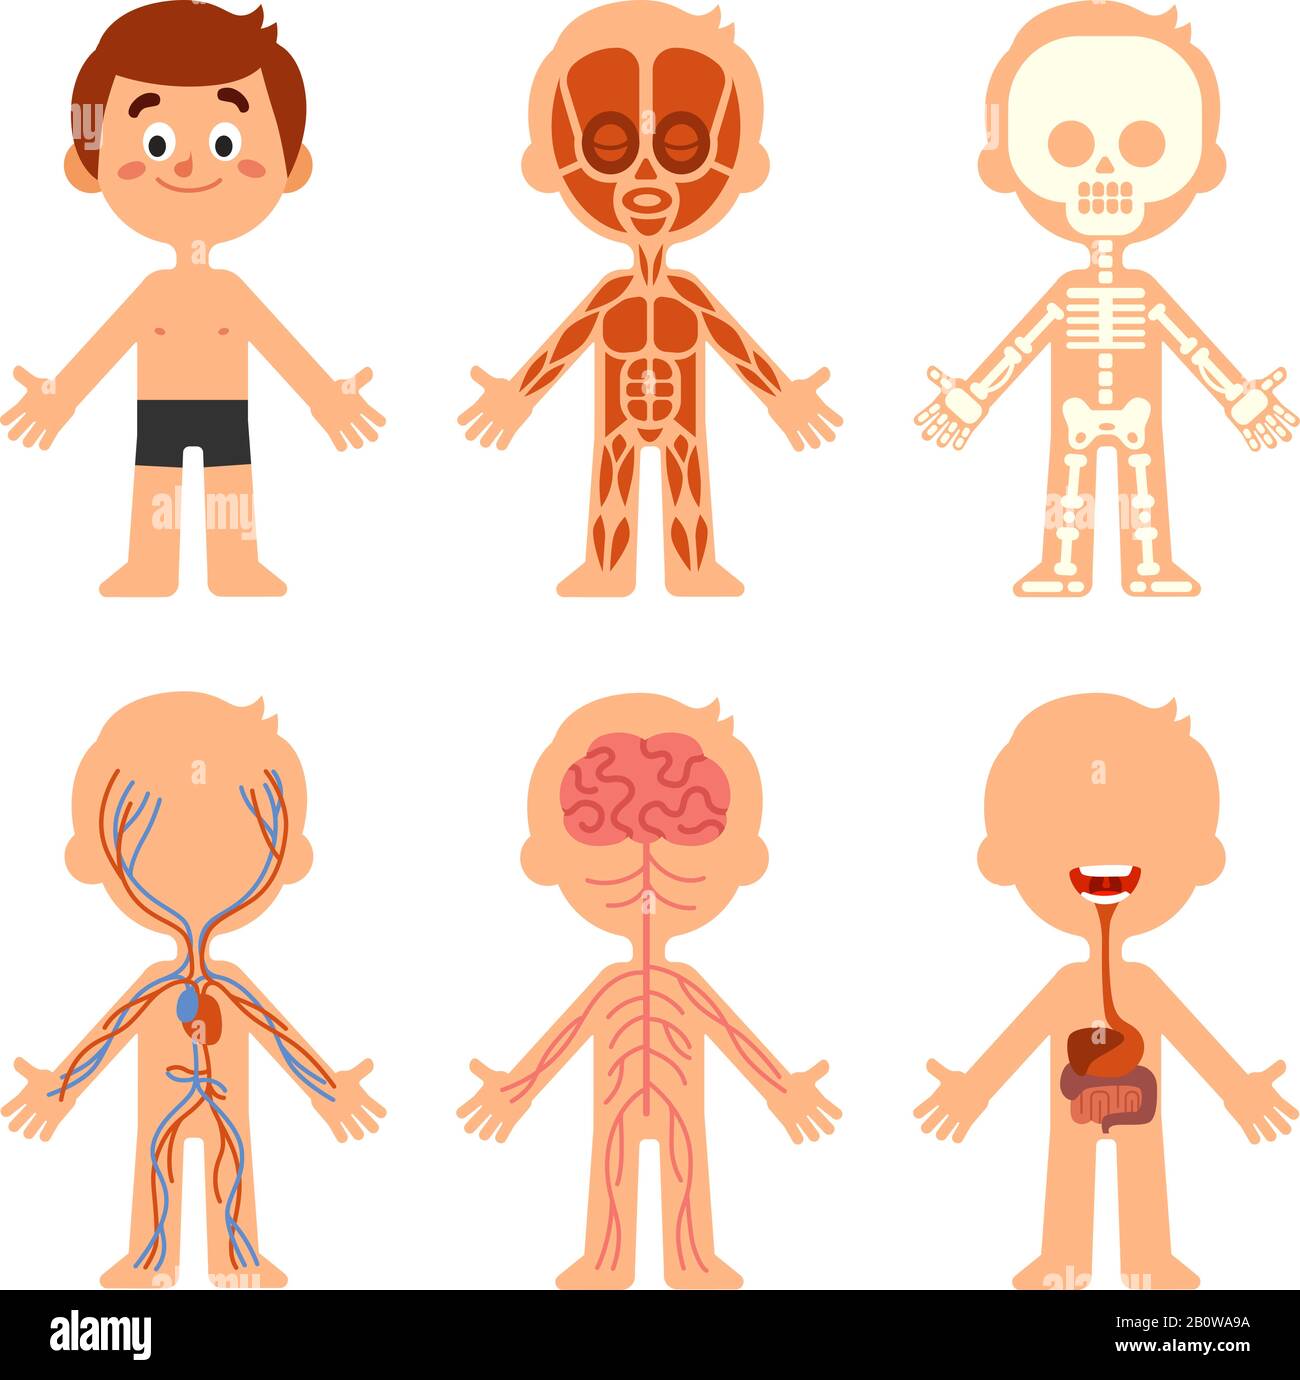 Cartoon Jungen Körperanatomie. Anatomische Karte für humanbiologische Systeme. Vektor-Darstellung von Skelett, Venen und Organen Stock Vektor